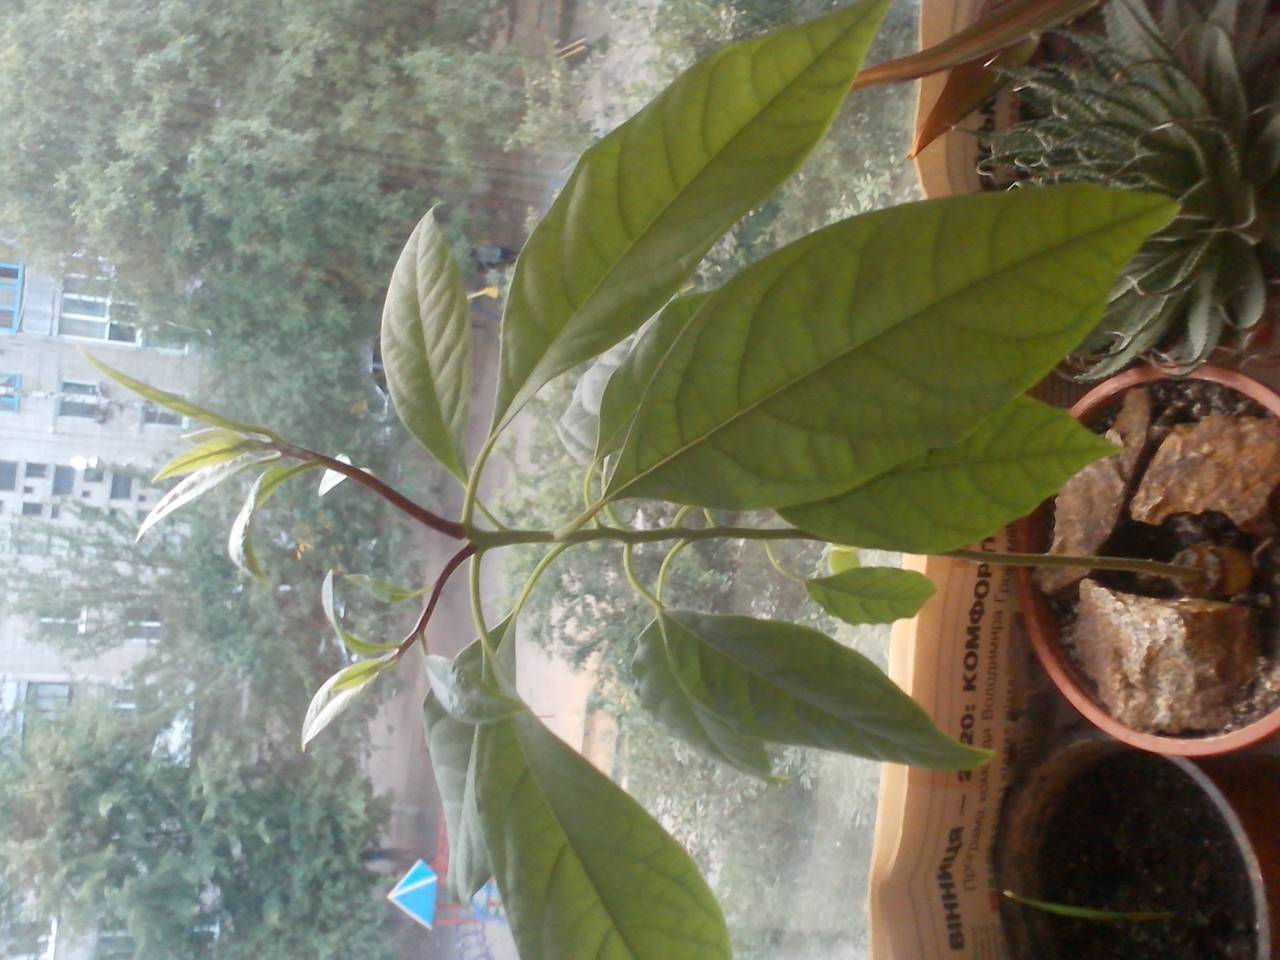 Как вырастить авокадо из косточки в домашних условиях, чтобы были плоды: пошаговый алгоритм действий по выращиванию экзотического деревца. 10 советов, чтобы вырастить авокадо из косточки дома